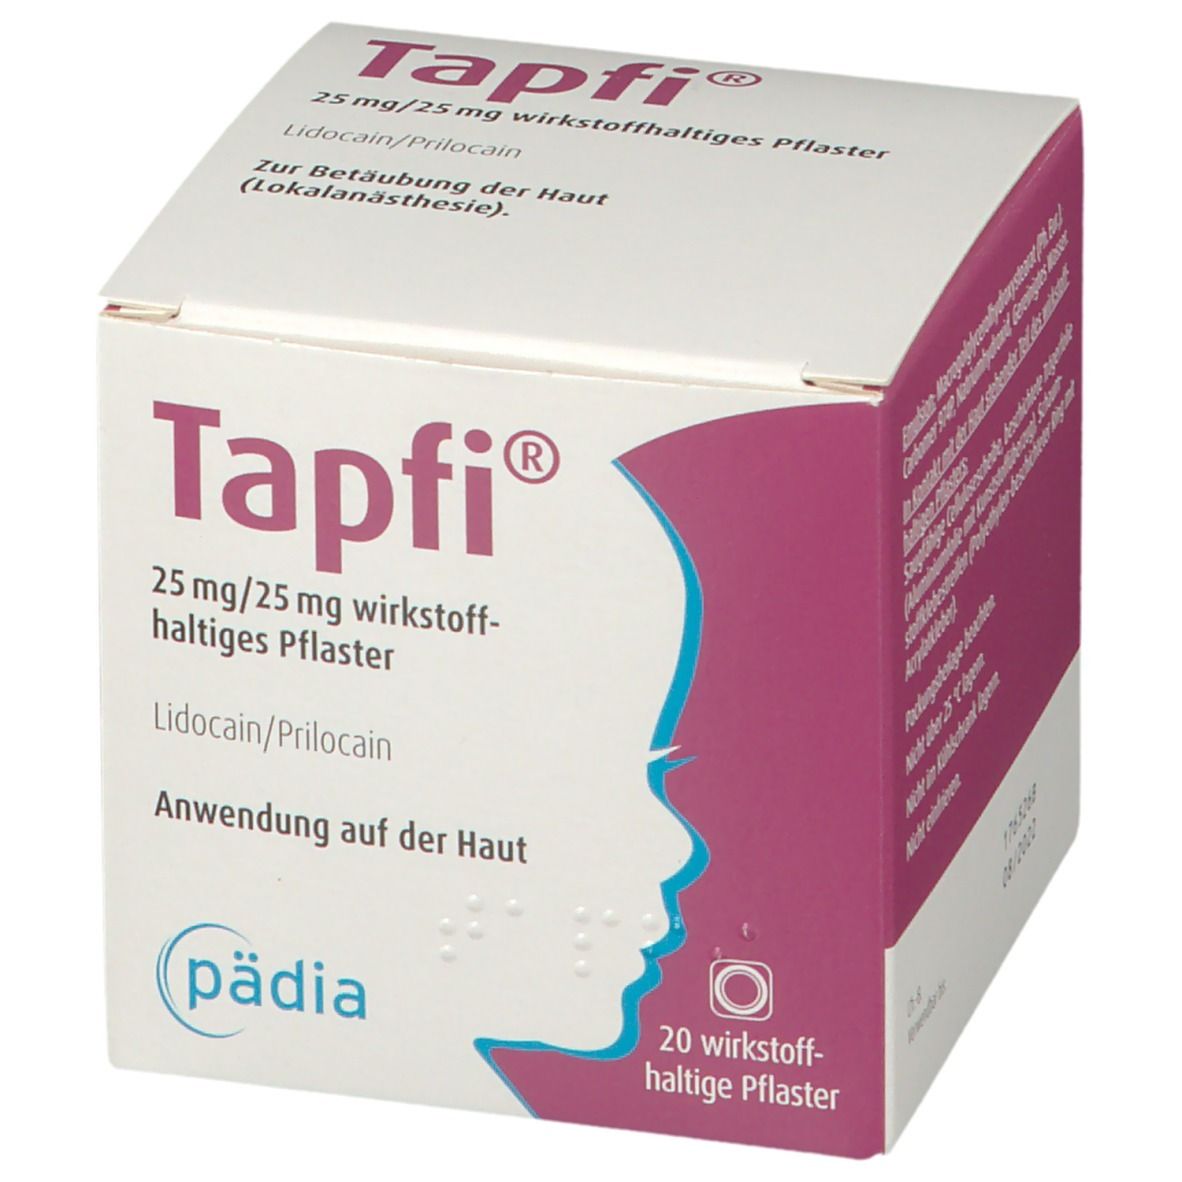 Tapfi® 25 mg/25 mg